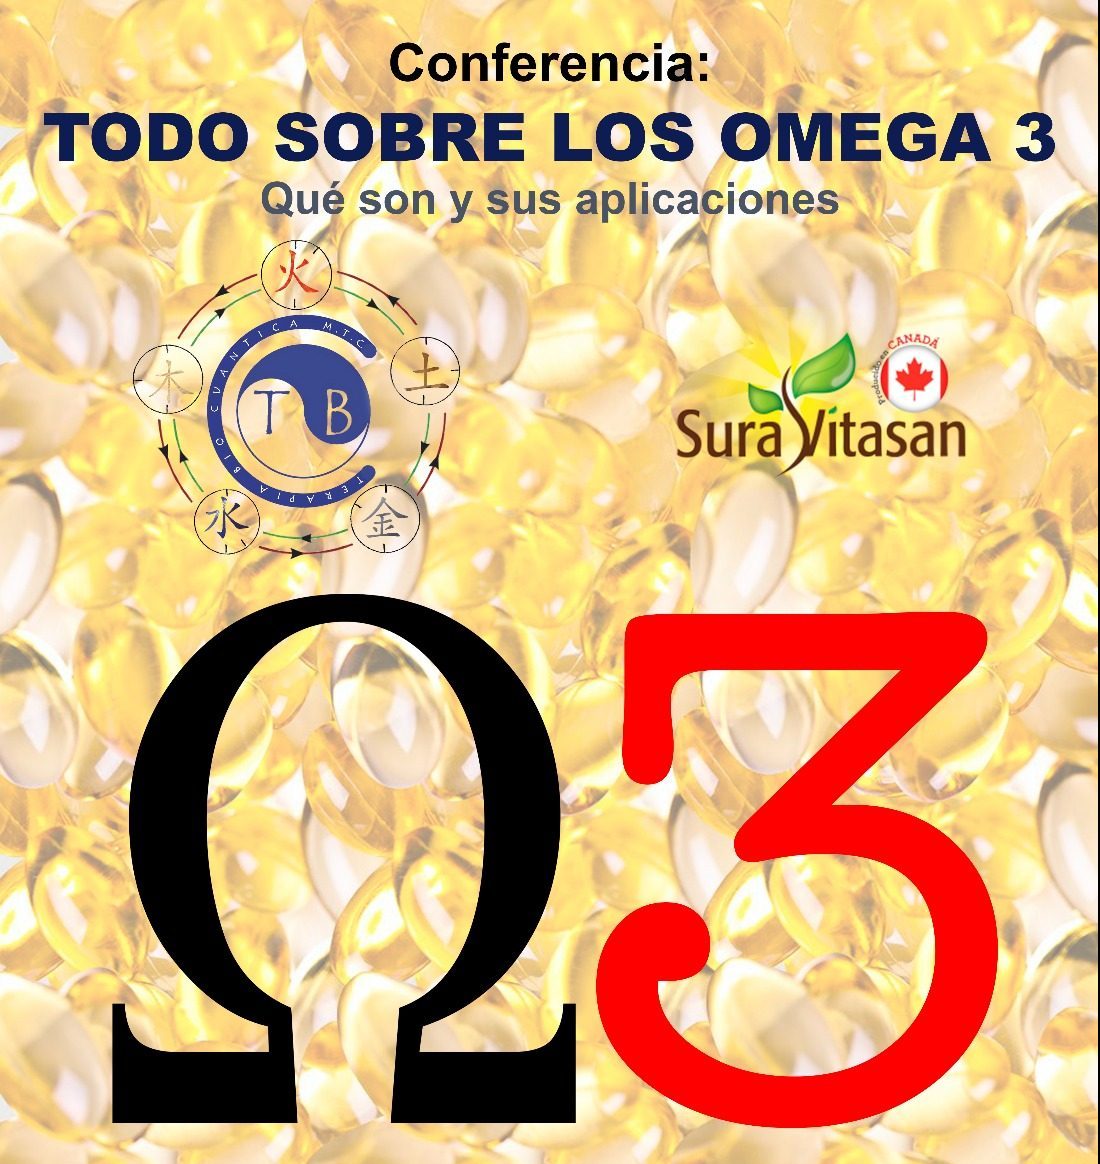 Todo sobre los Omega 3. Conferencia gratuita. 2 CONVOCATORIAS: 17:30h y 19h